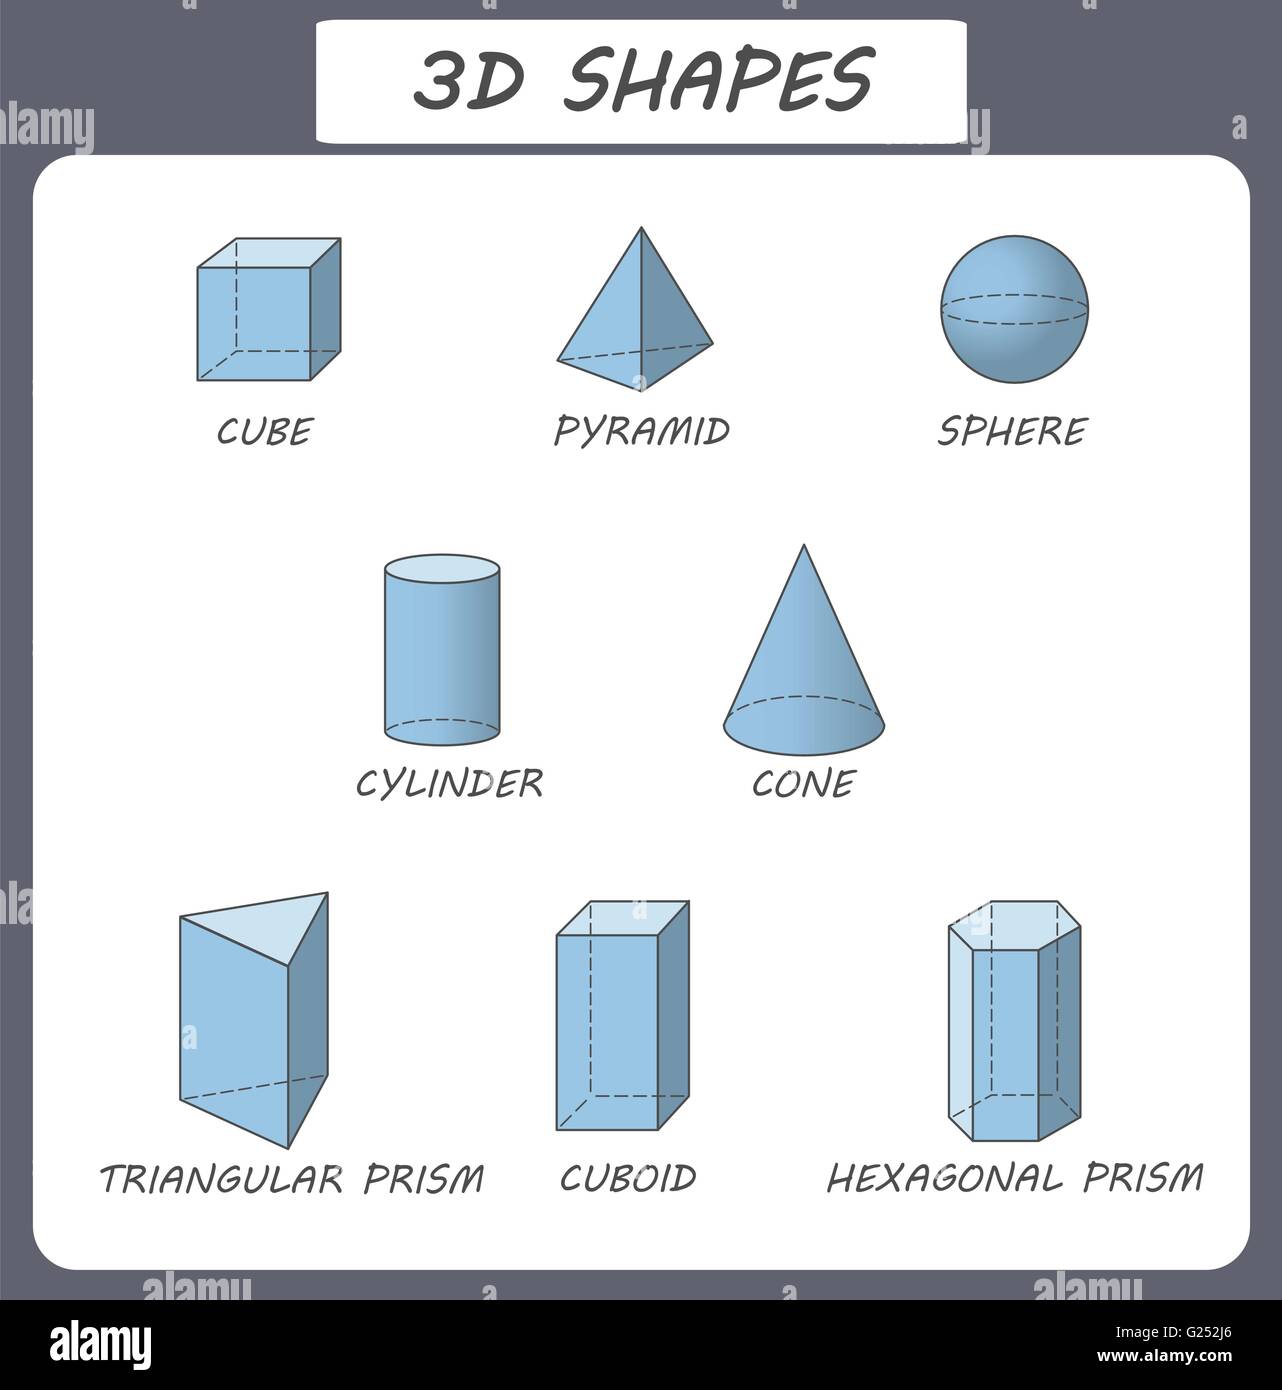 Il vettore a forme 3d. Poster educativi per bambini.Set di forme 3d. Solido isolato forme geometriche. Un cubo, cuboide, piramide, sfera, cilindro, cono, prisma triangolare, prisma esagonale. Blu trasparente Illustrazione Vettoriale